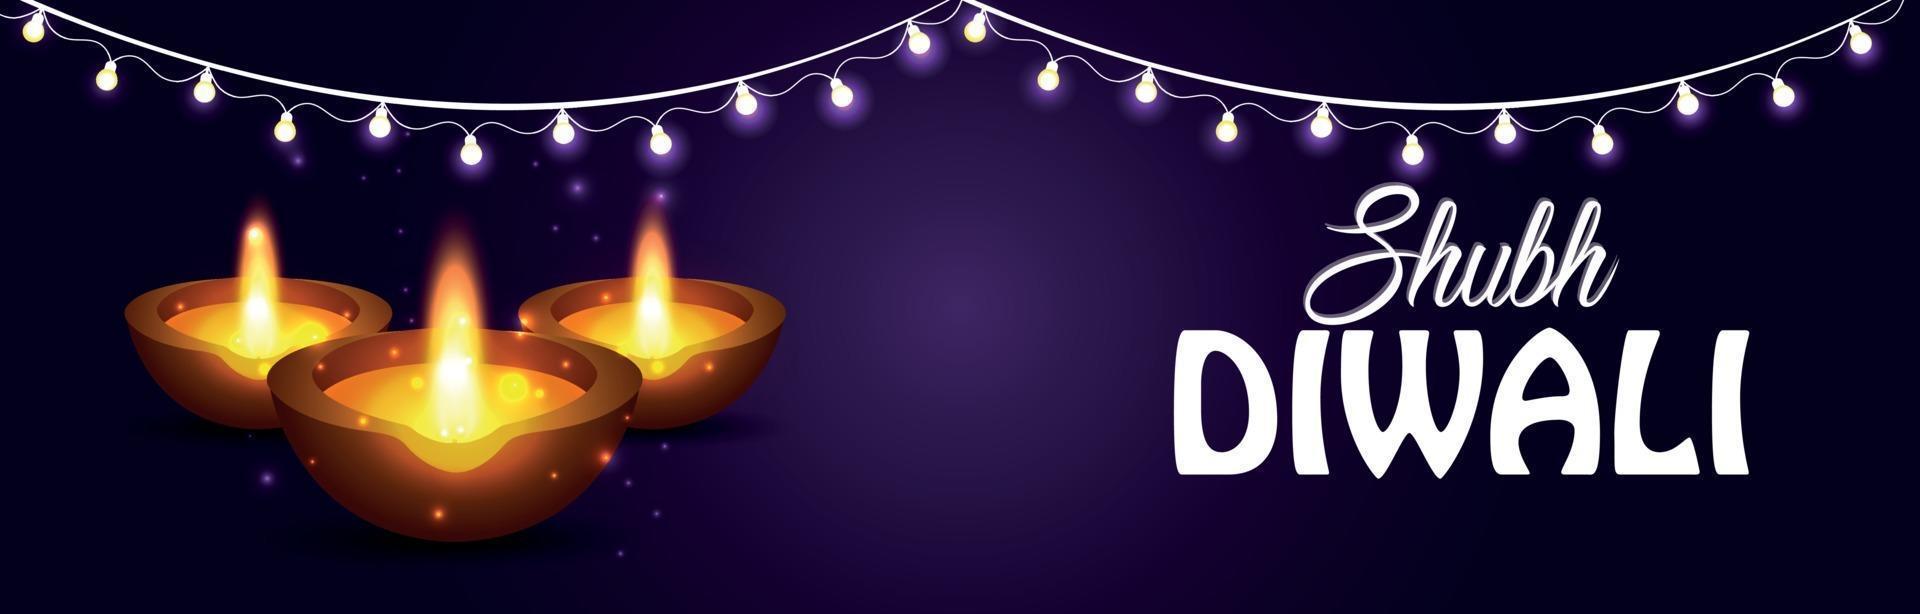 banner ou cabeçalho de feliz celebração de Diwali com luz e óleo de Diwali diya em fundo roxo vetor